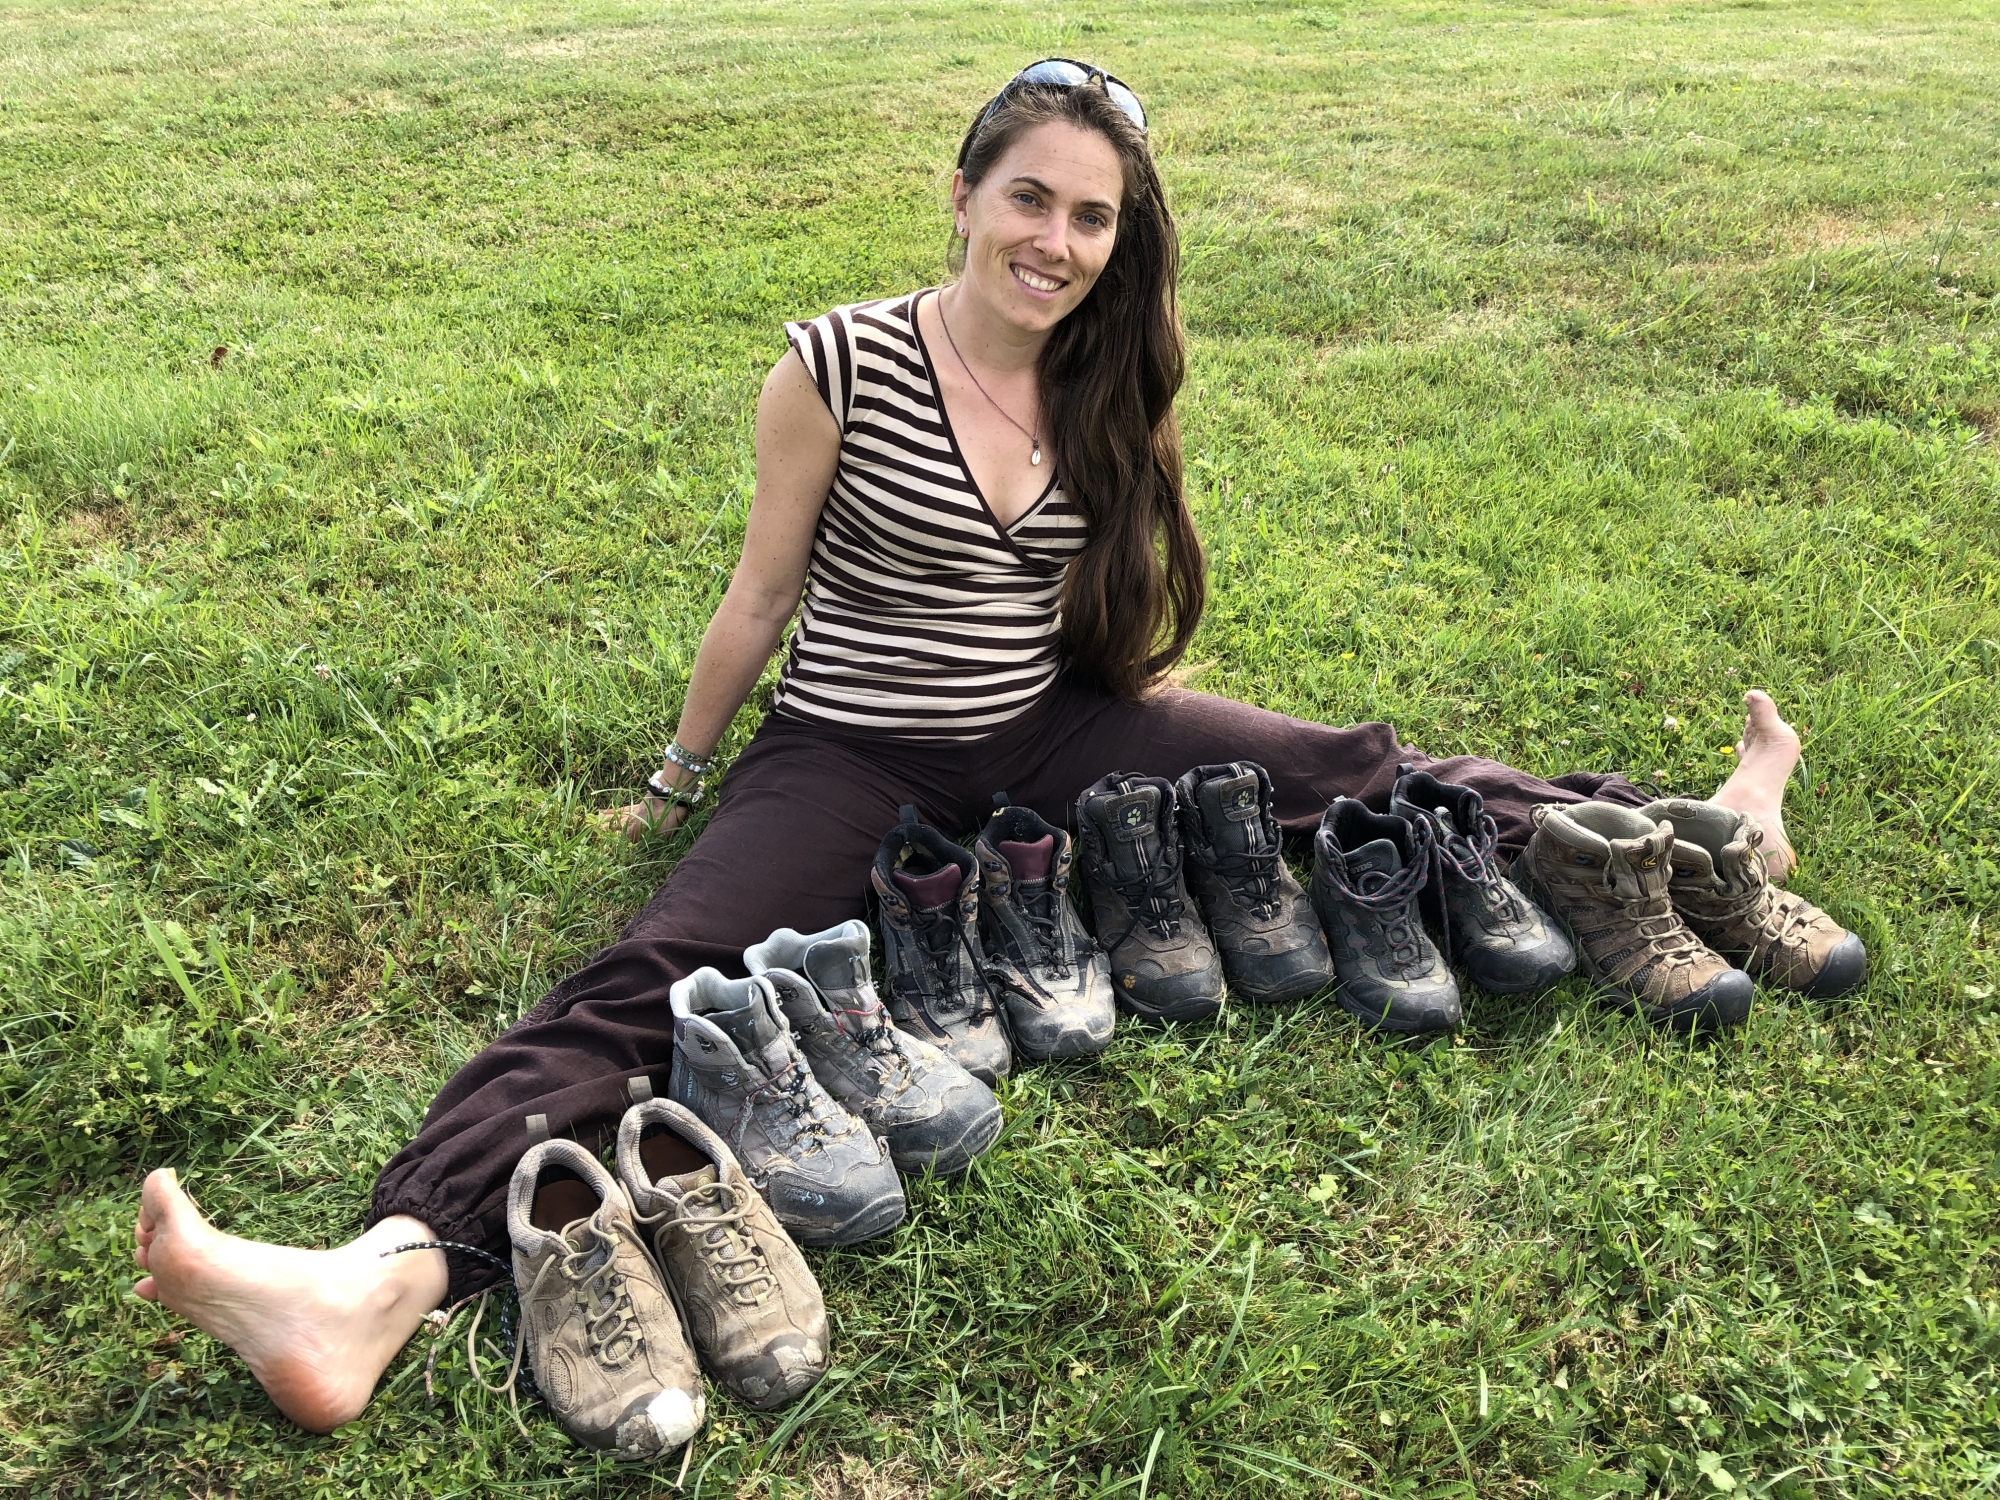 Caroline Moireaux et six de ses paires de chaussures ayant globe-trotté avec elle. Deux paires manquent à l'appel, peut-être ont-elles continué sans elle? 